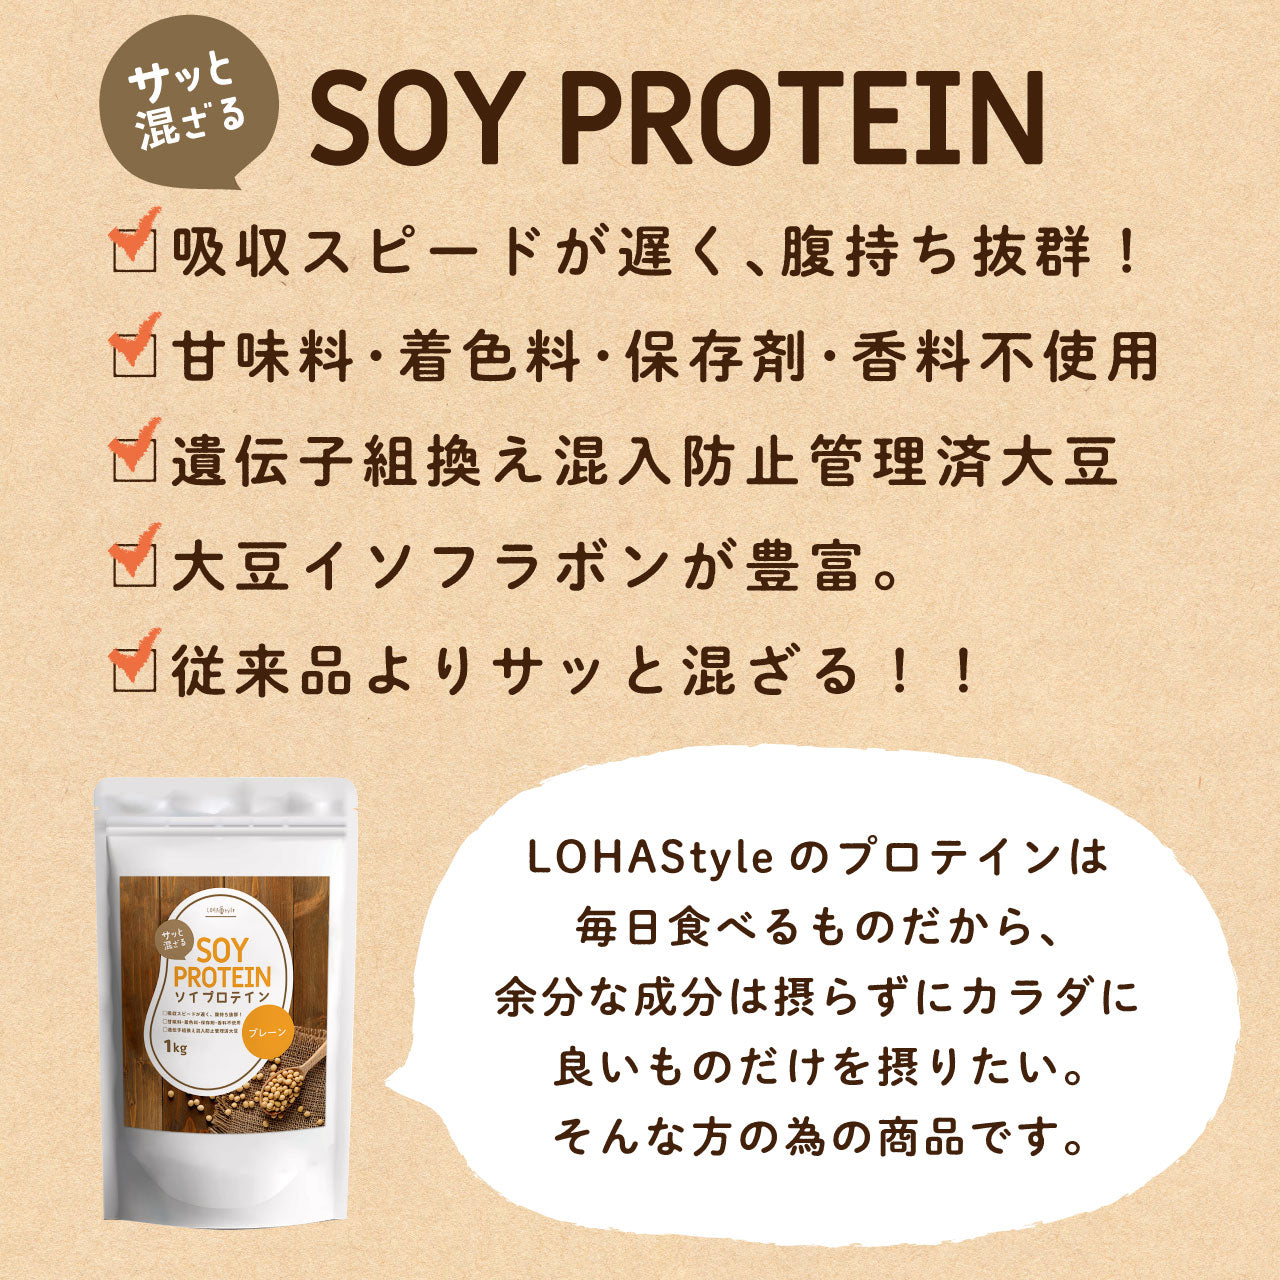 【完売】 ソイプロテイン 1kg 大豆 プロテイン プレーン 大豆たんぱく イソフラボン ダイエット 置き換え アメリカ産 